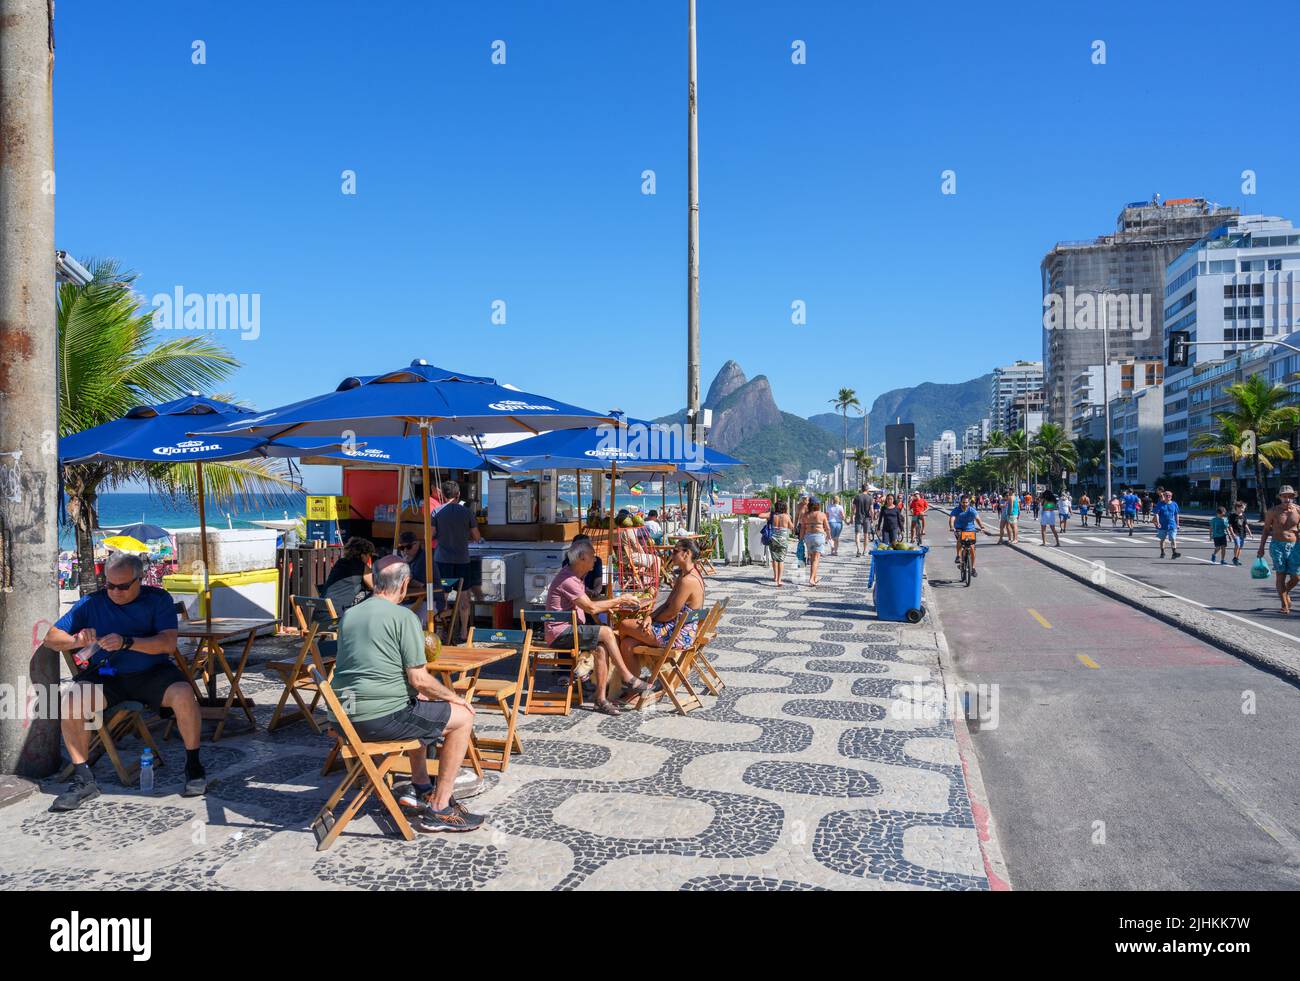 Kiosk an der Strandpromenade, Avenida Vieira Souto, Ipanema, Rio de Janeiro, Brasilien Stockfoto